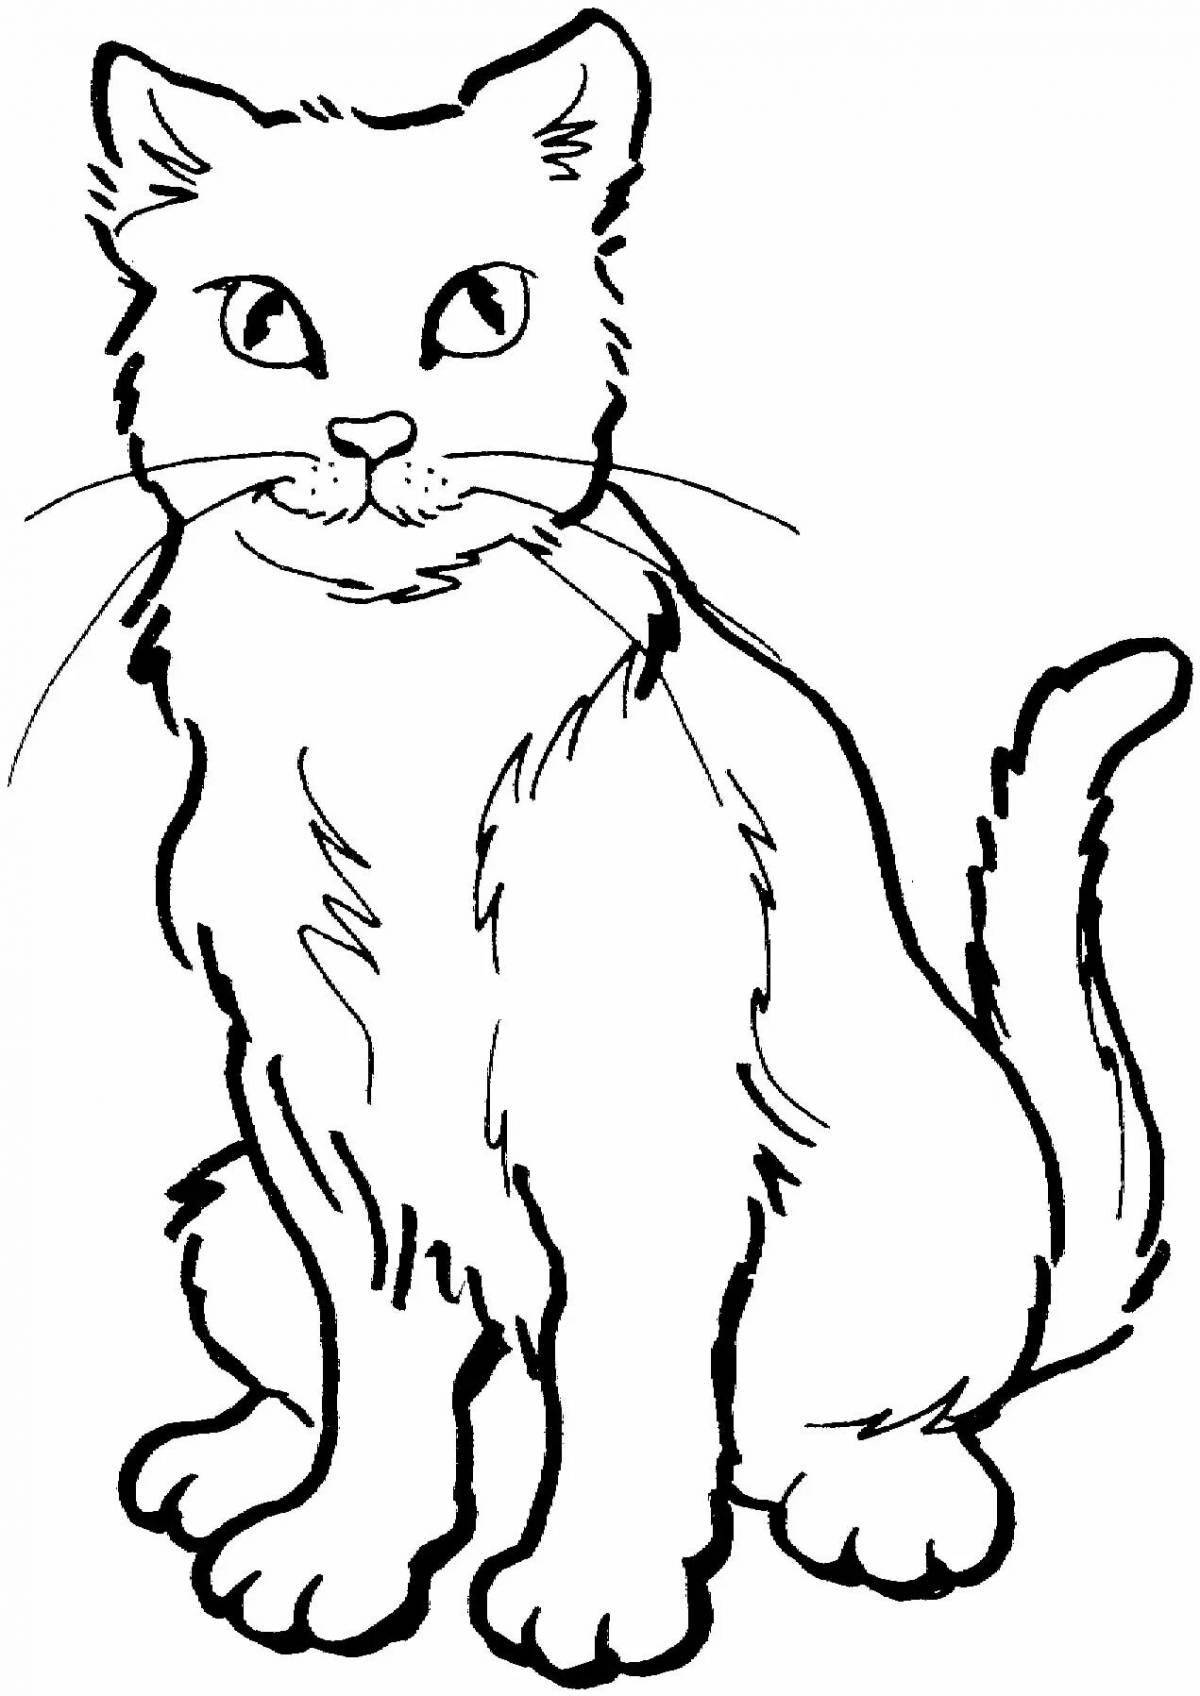 Замысловатая страница раскраски большой кошки